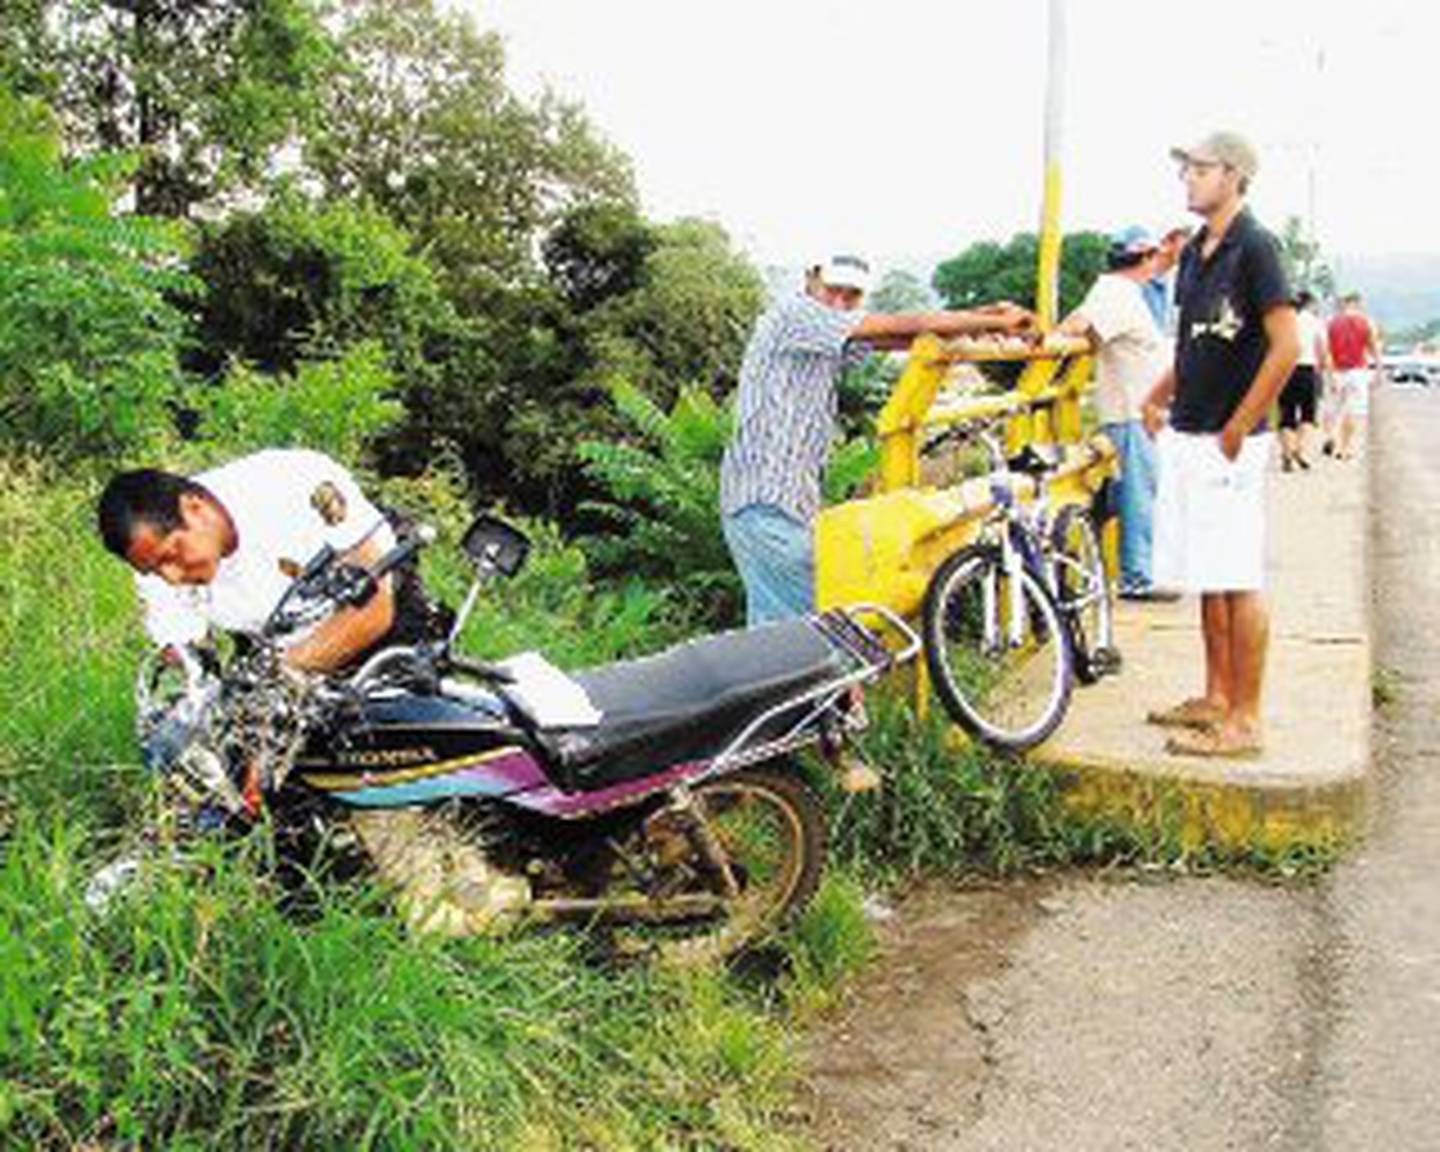 Motociclista Fallece En Guatuso Al Ser Arrollado Por Autob S La Naci N